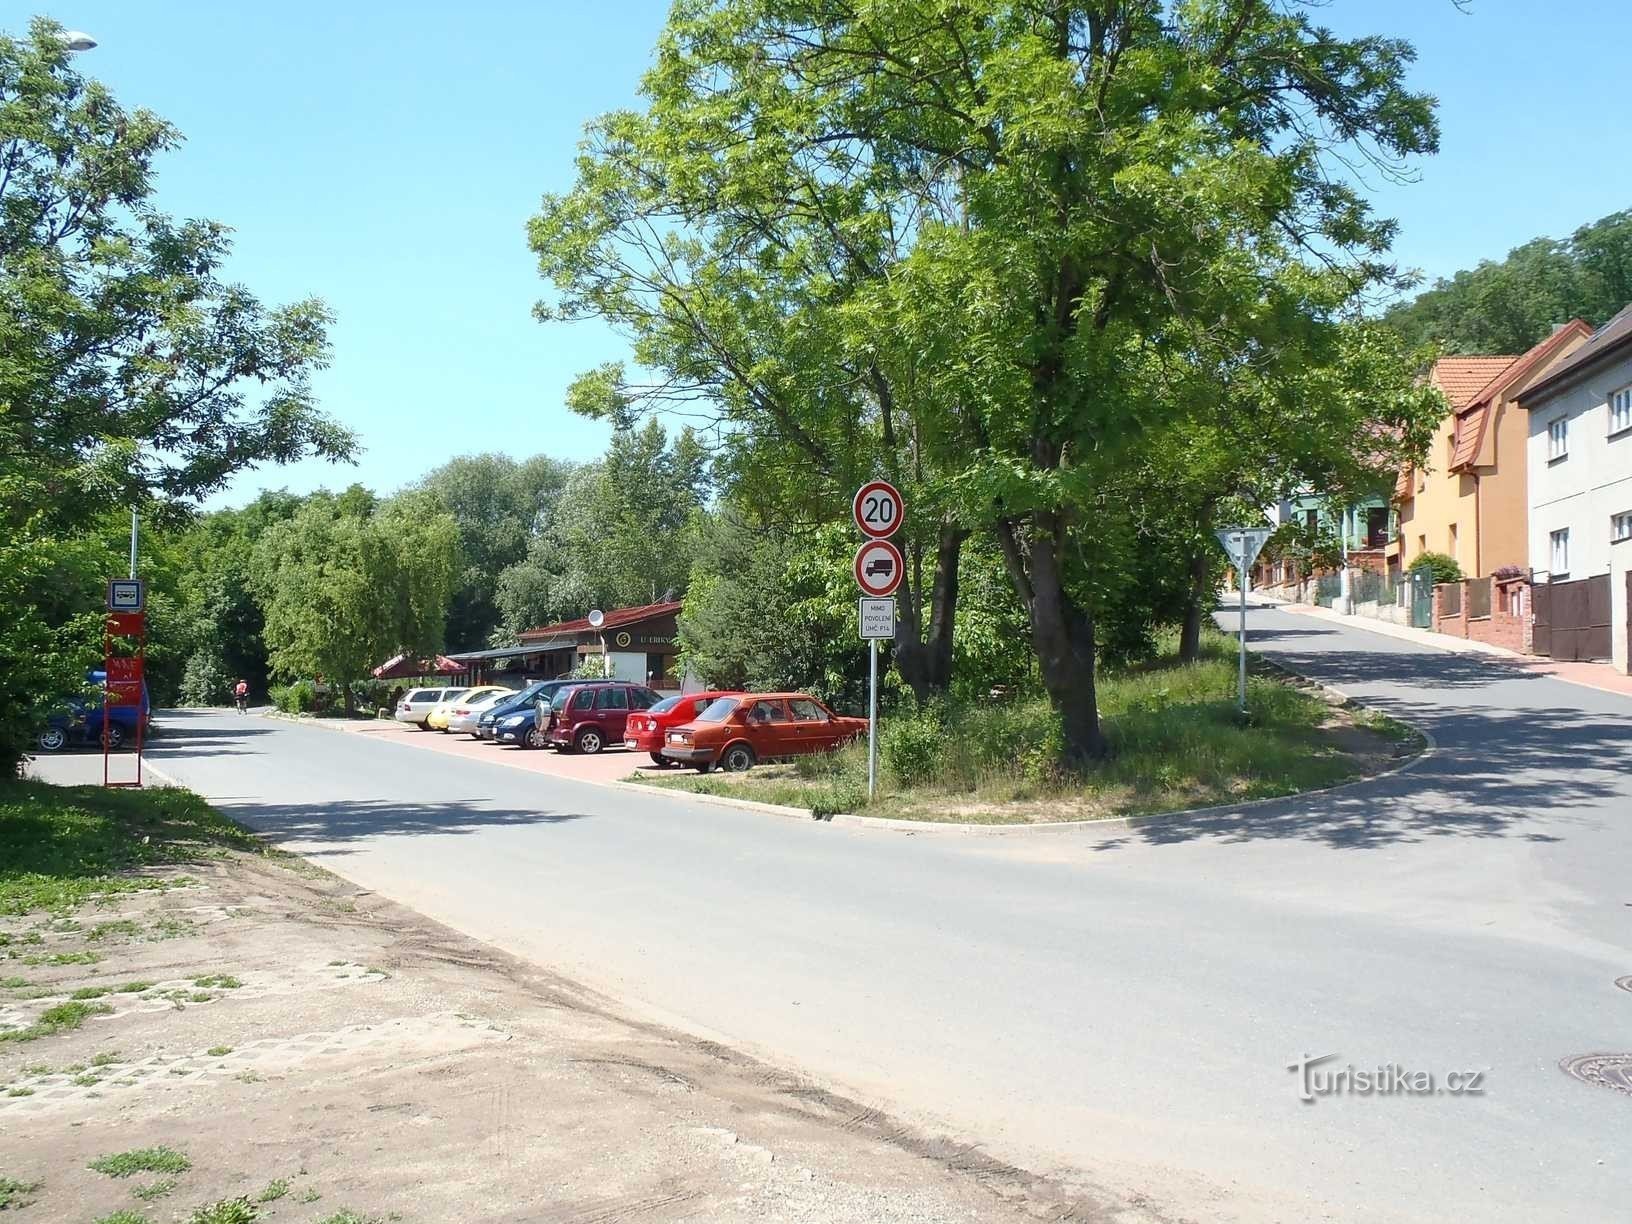 Straßen Tálinská und Lánská in Kyjy - 15.6.2012